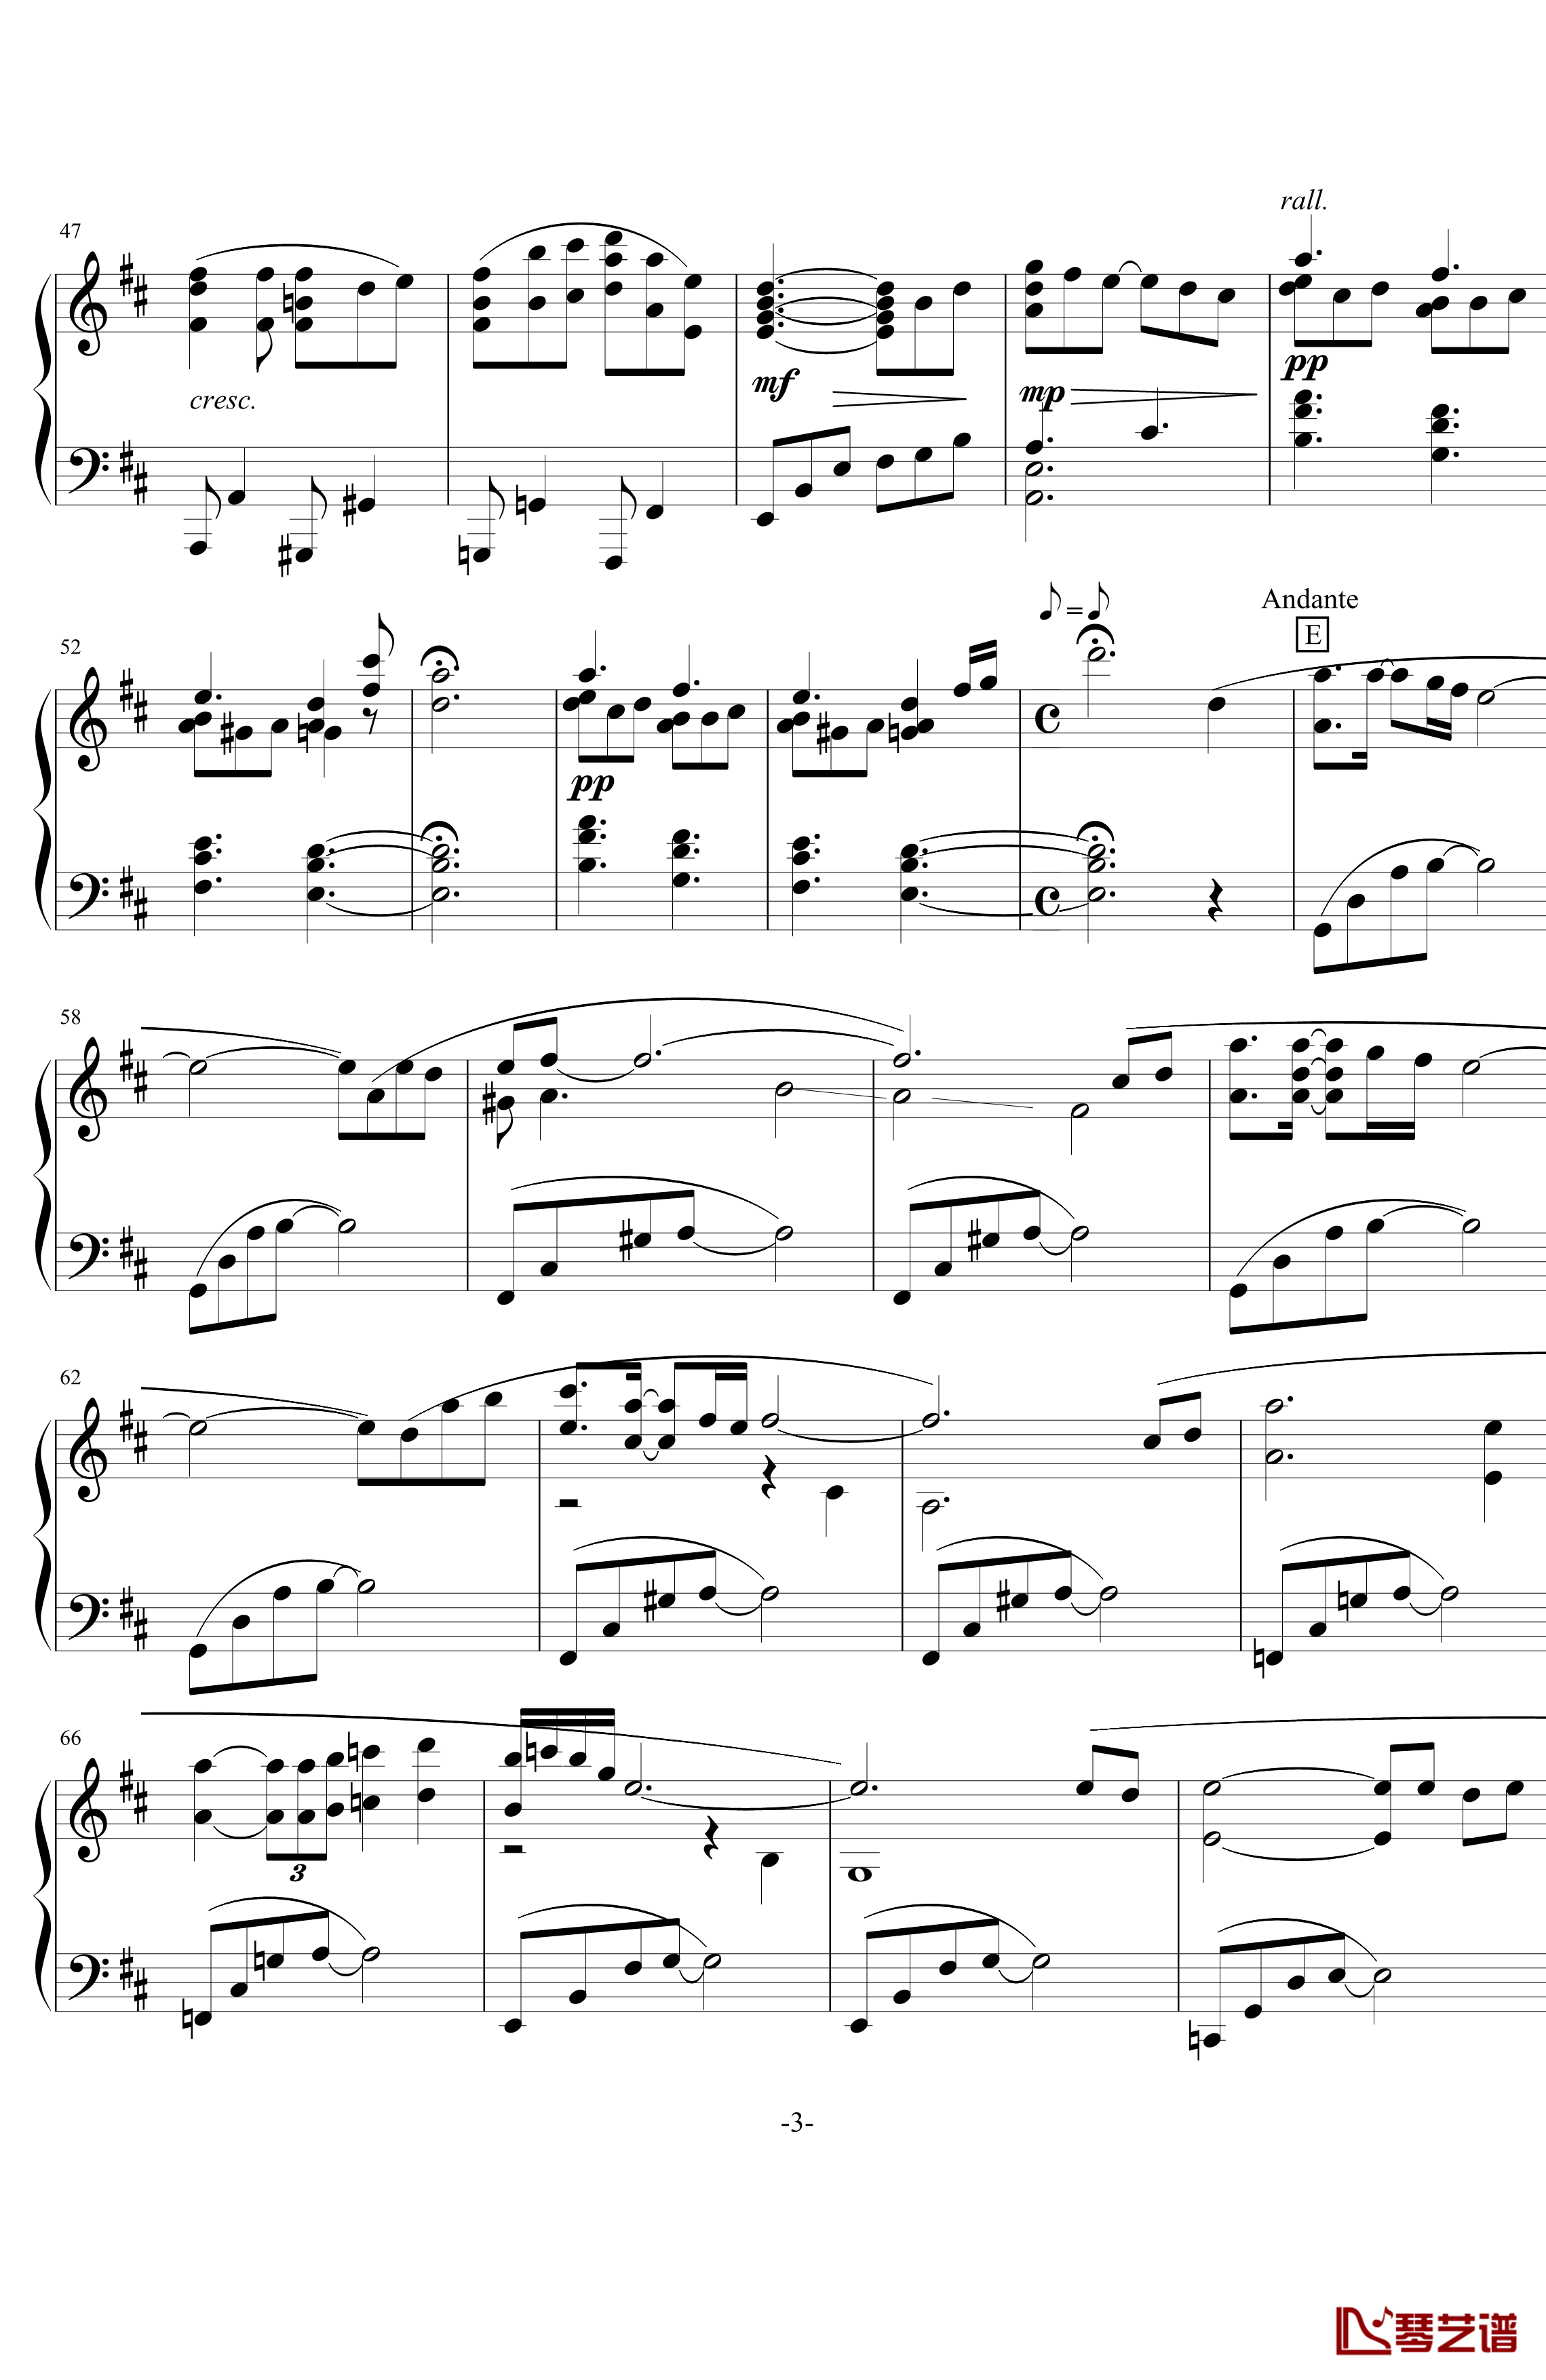 アウギュステ列島钢琴谱-白沫の瀑布- グランブルーファンタジー-碧蓝幻想